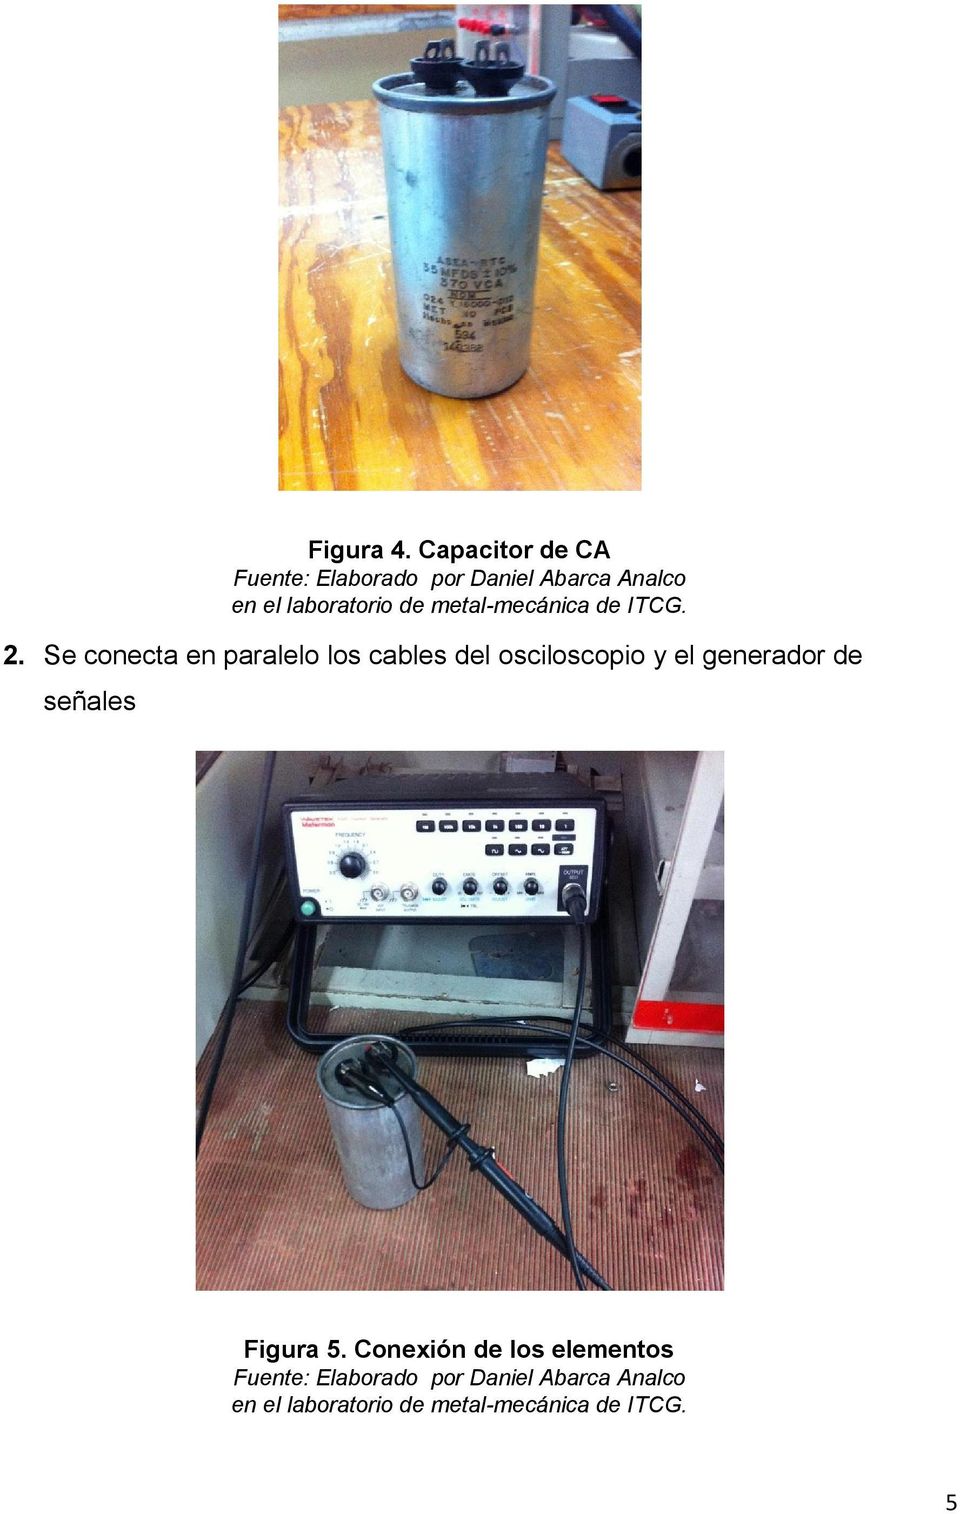 Capacitor de CA Fuente: Elaborado por Daniel Abarca Analco en el laboratorio de